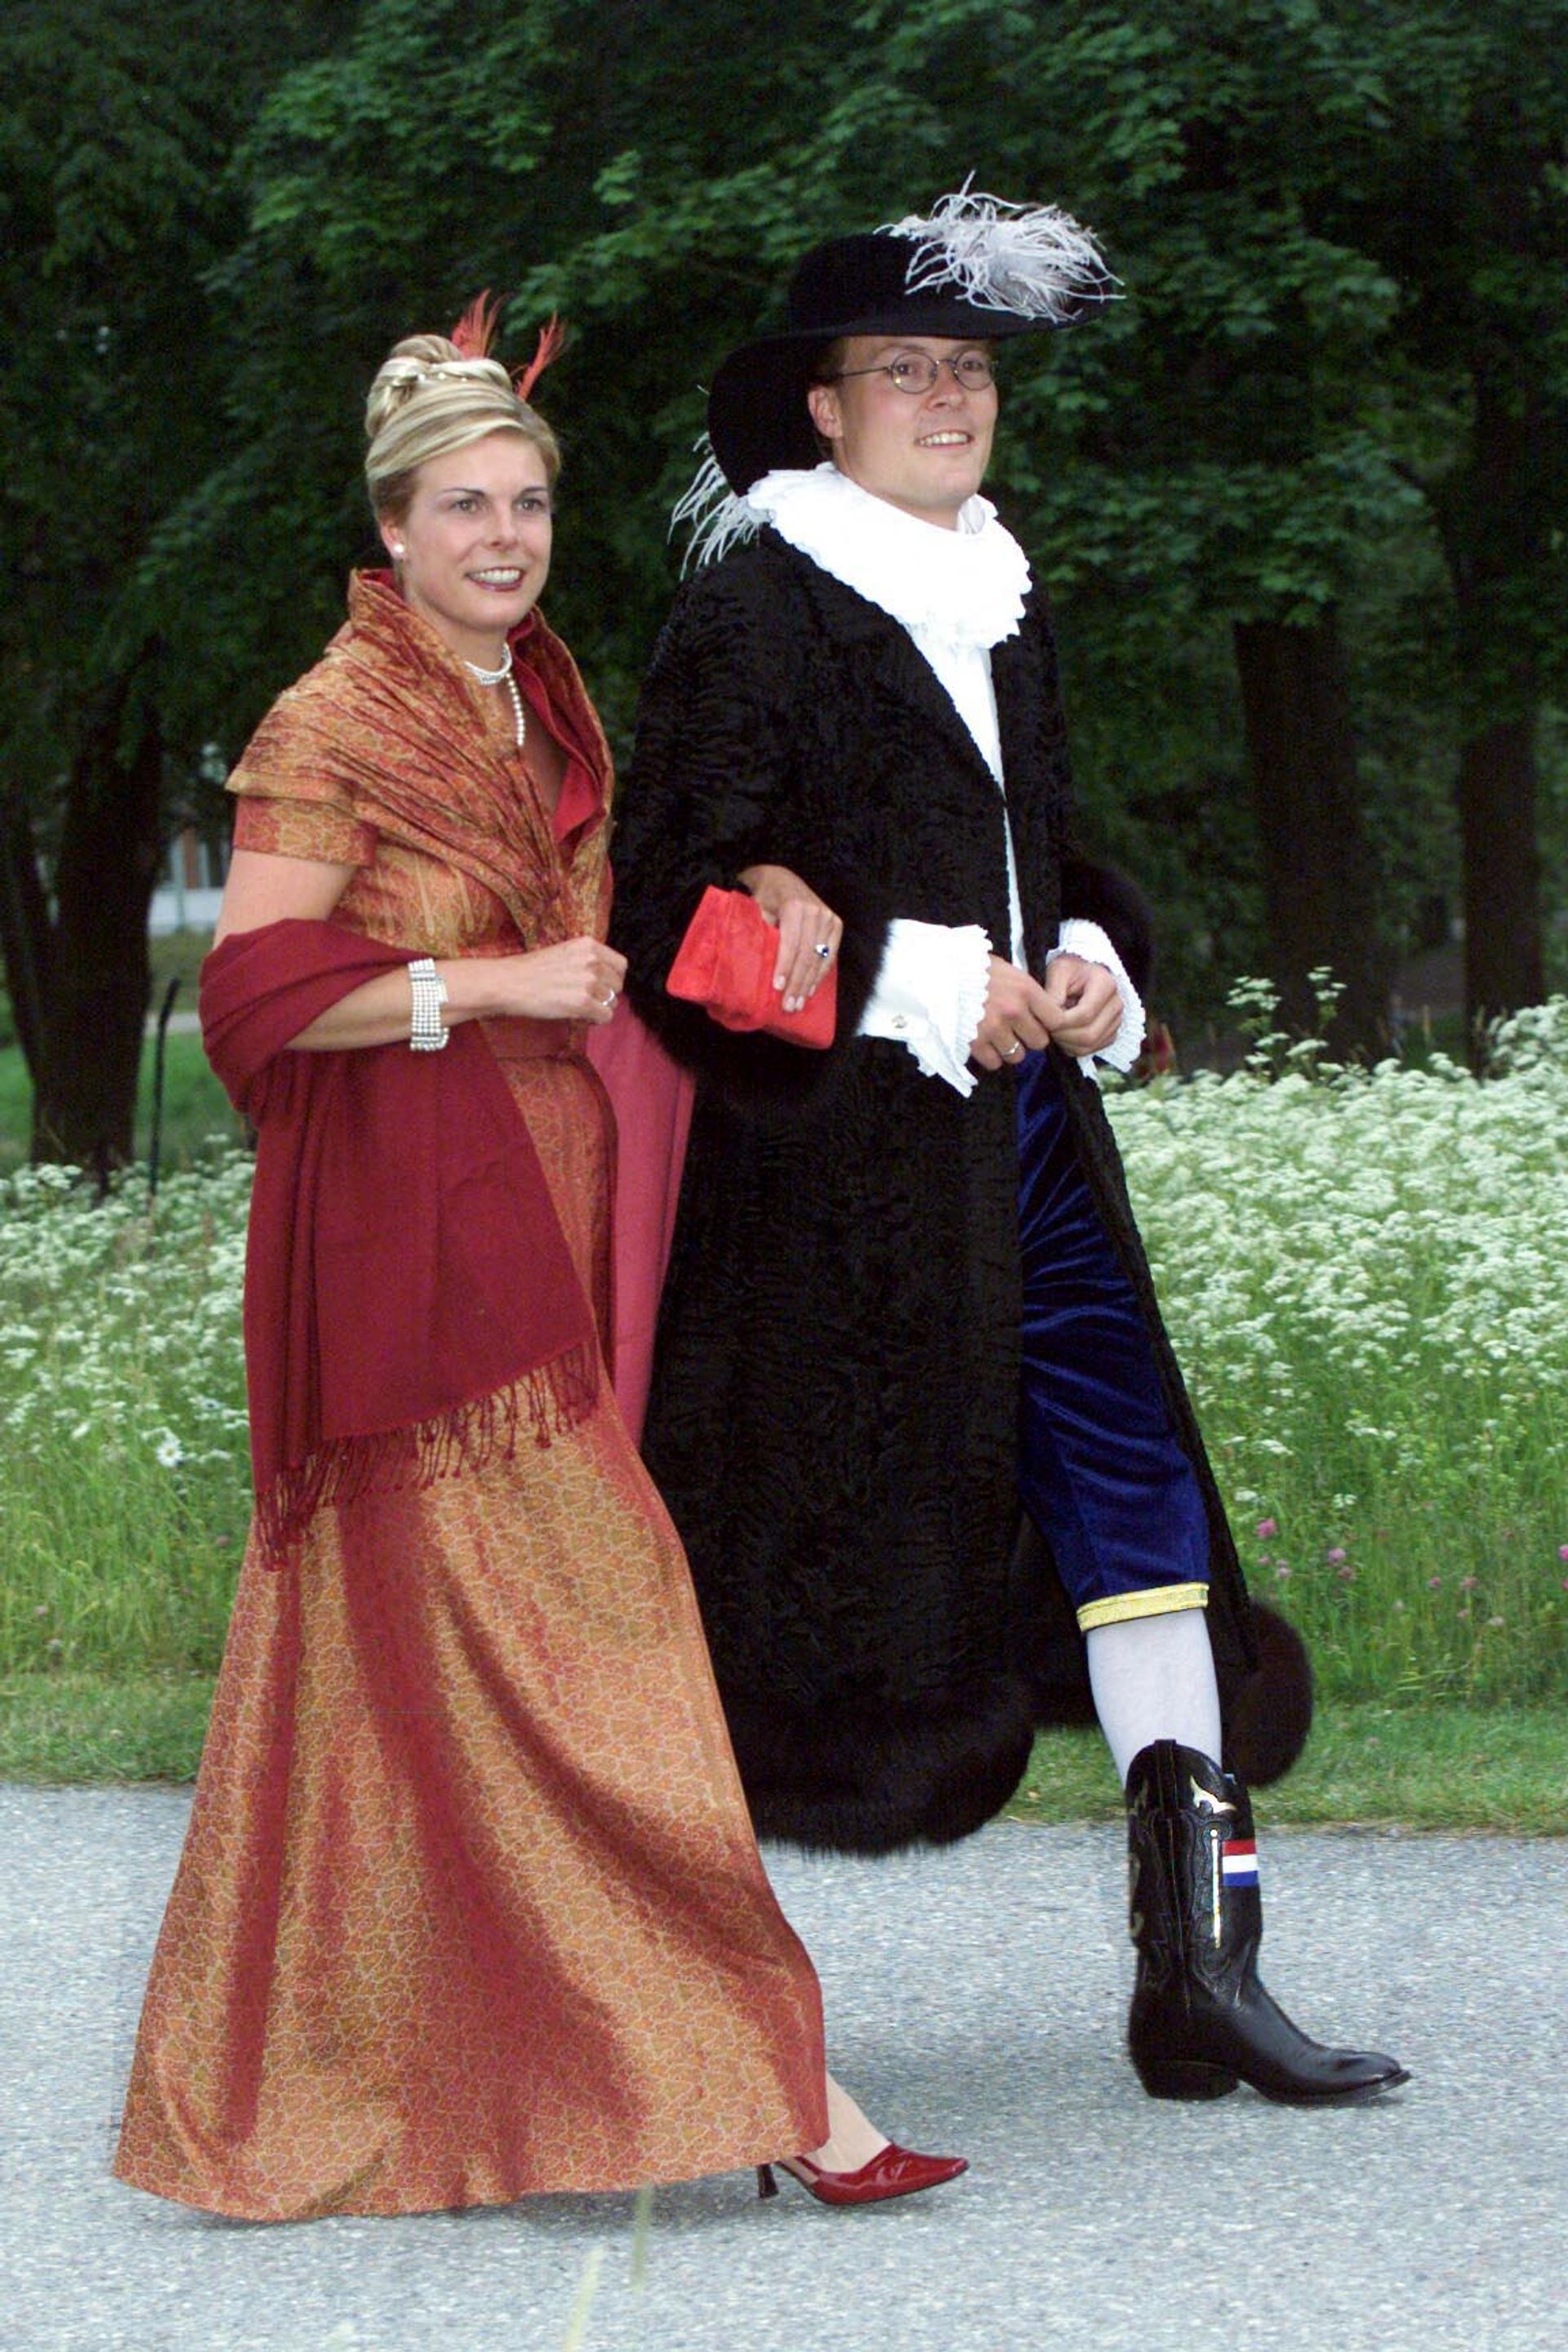 Kort na hun huwelijksdag verschijnt het pasgetrouwde paar op het 25-jarig huwelijksfeest van koning